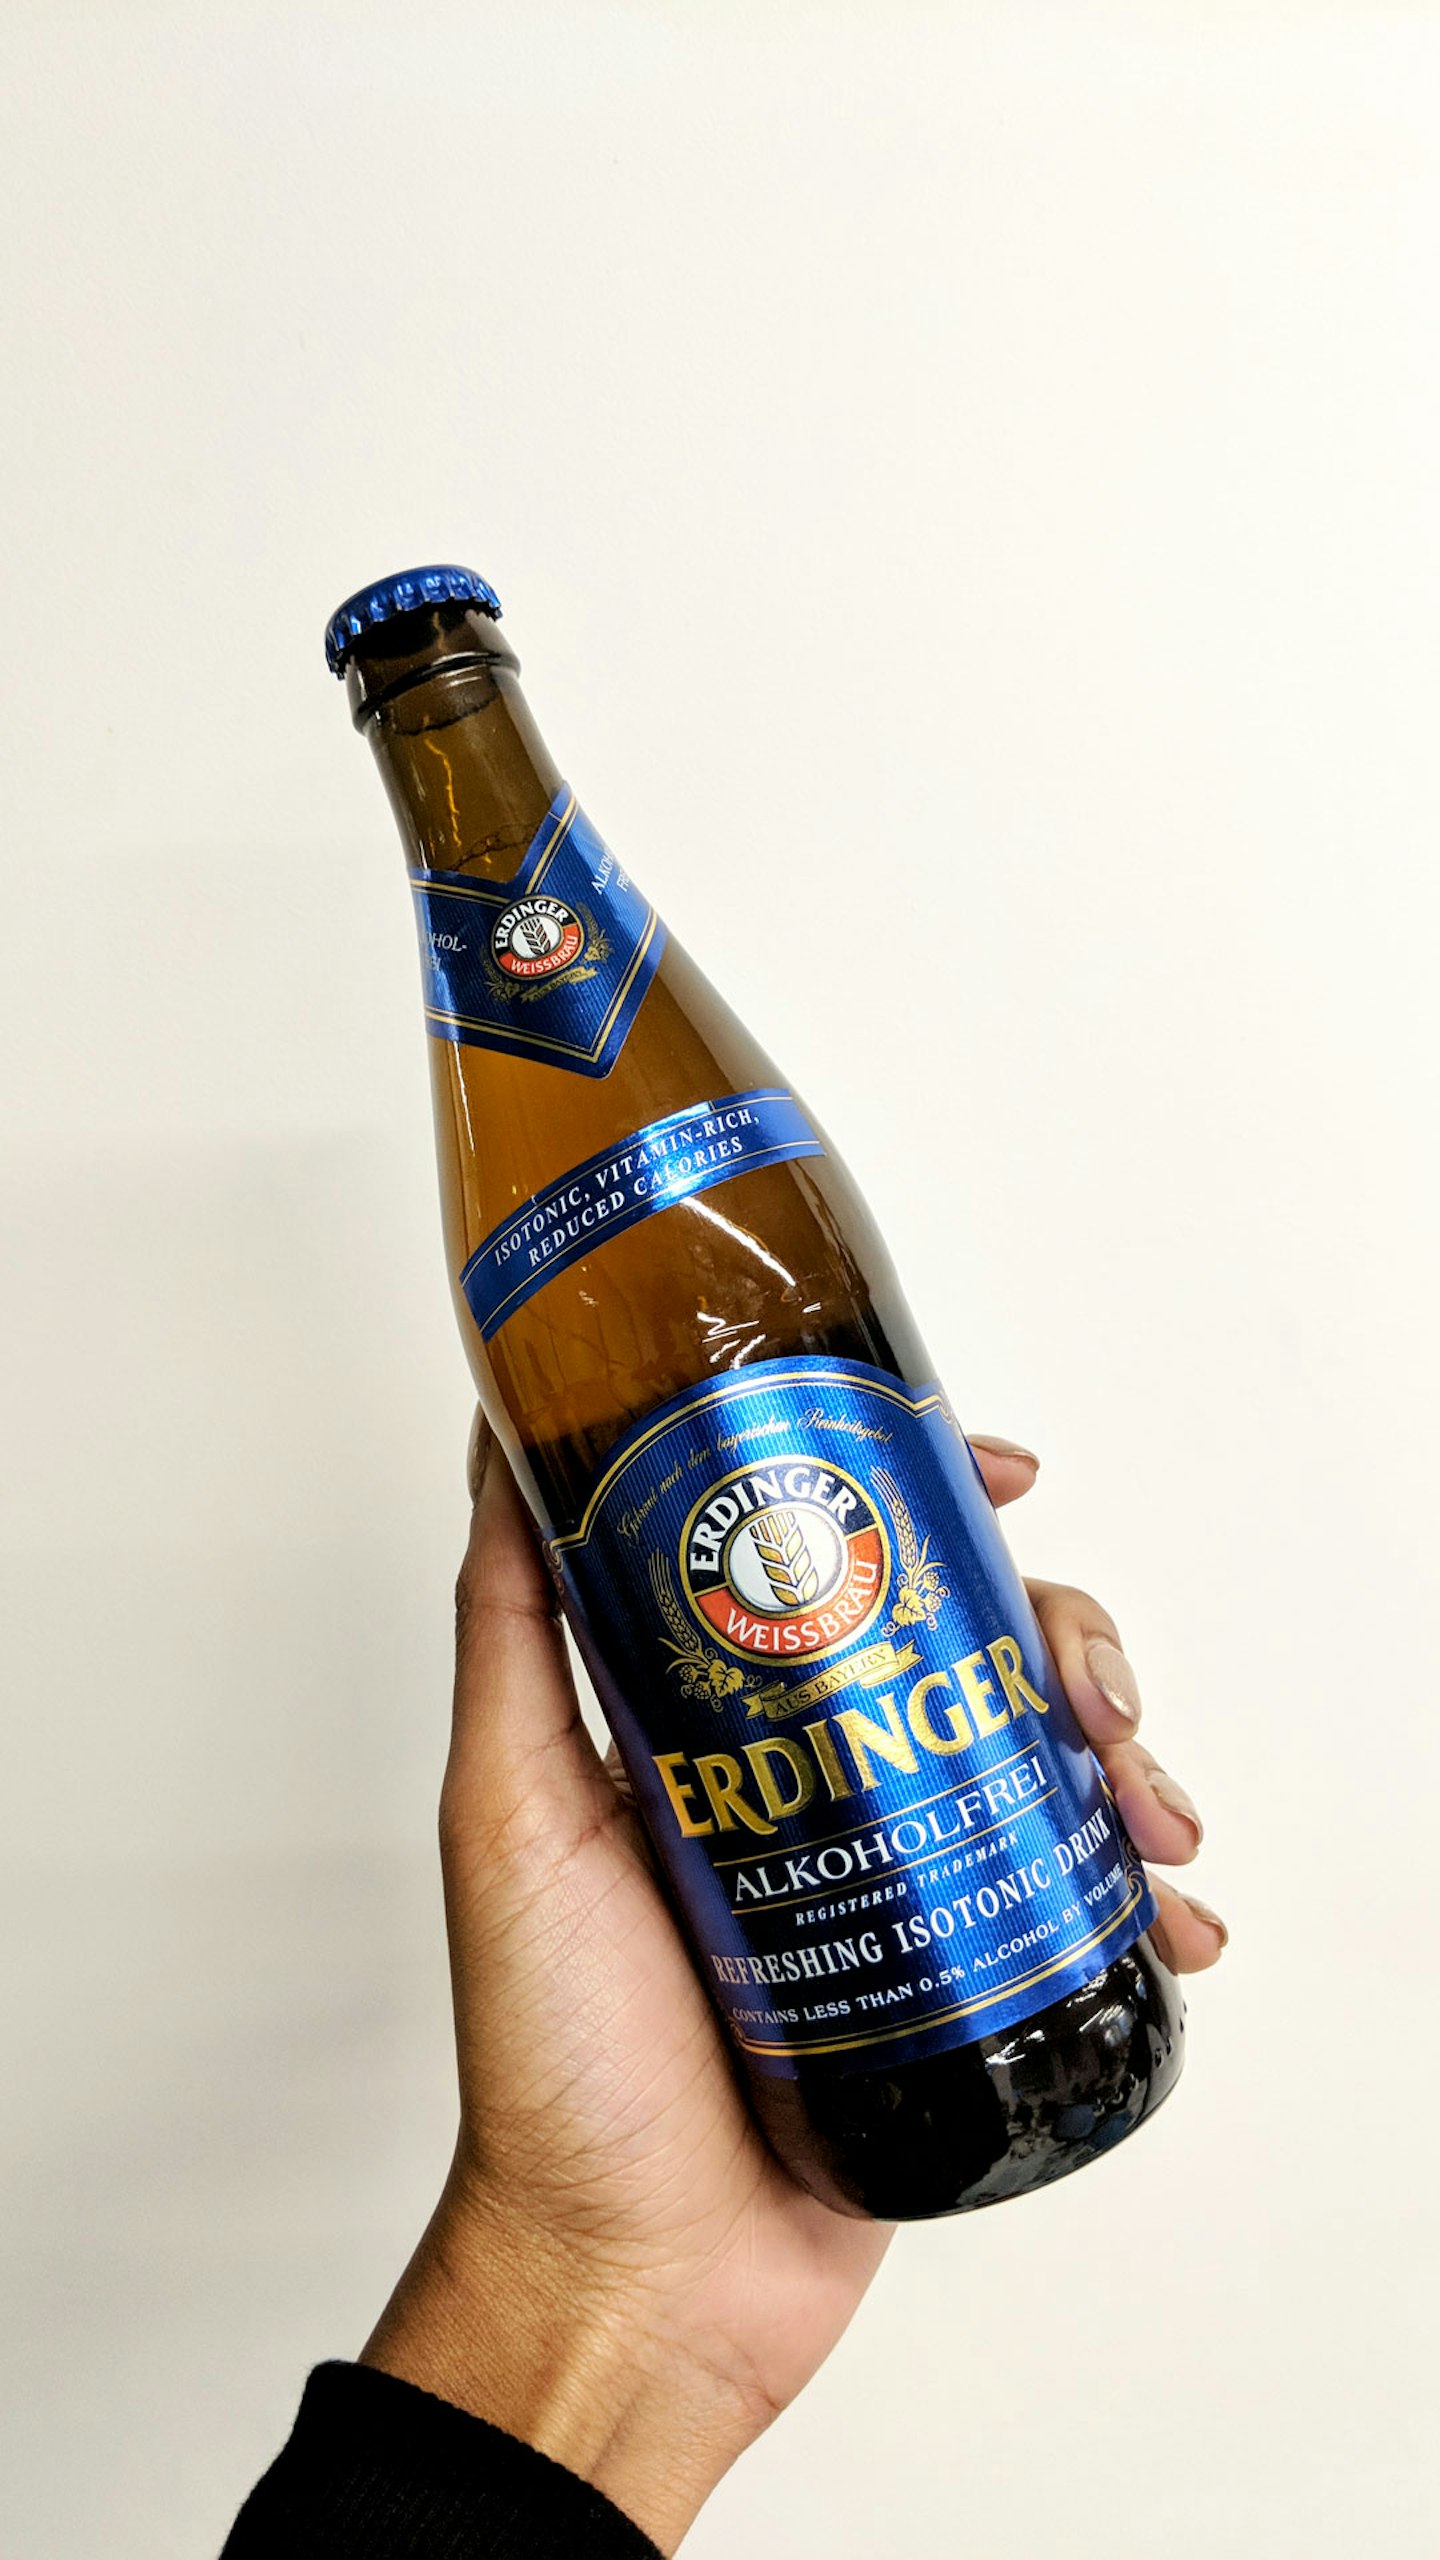 3. Alcohol-Free Erdinger Wheat Beer